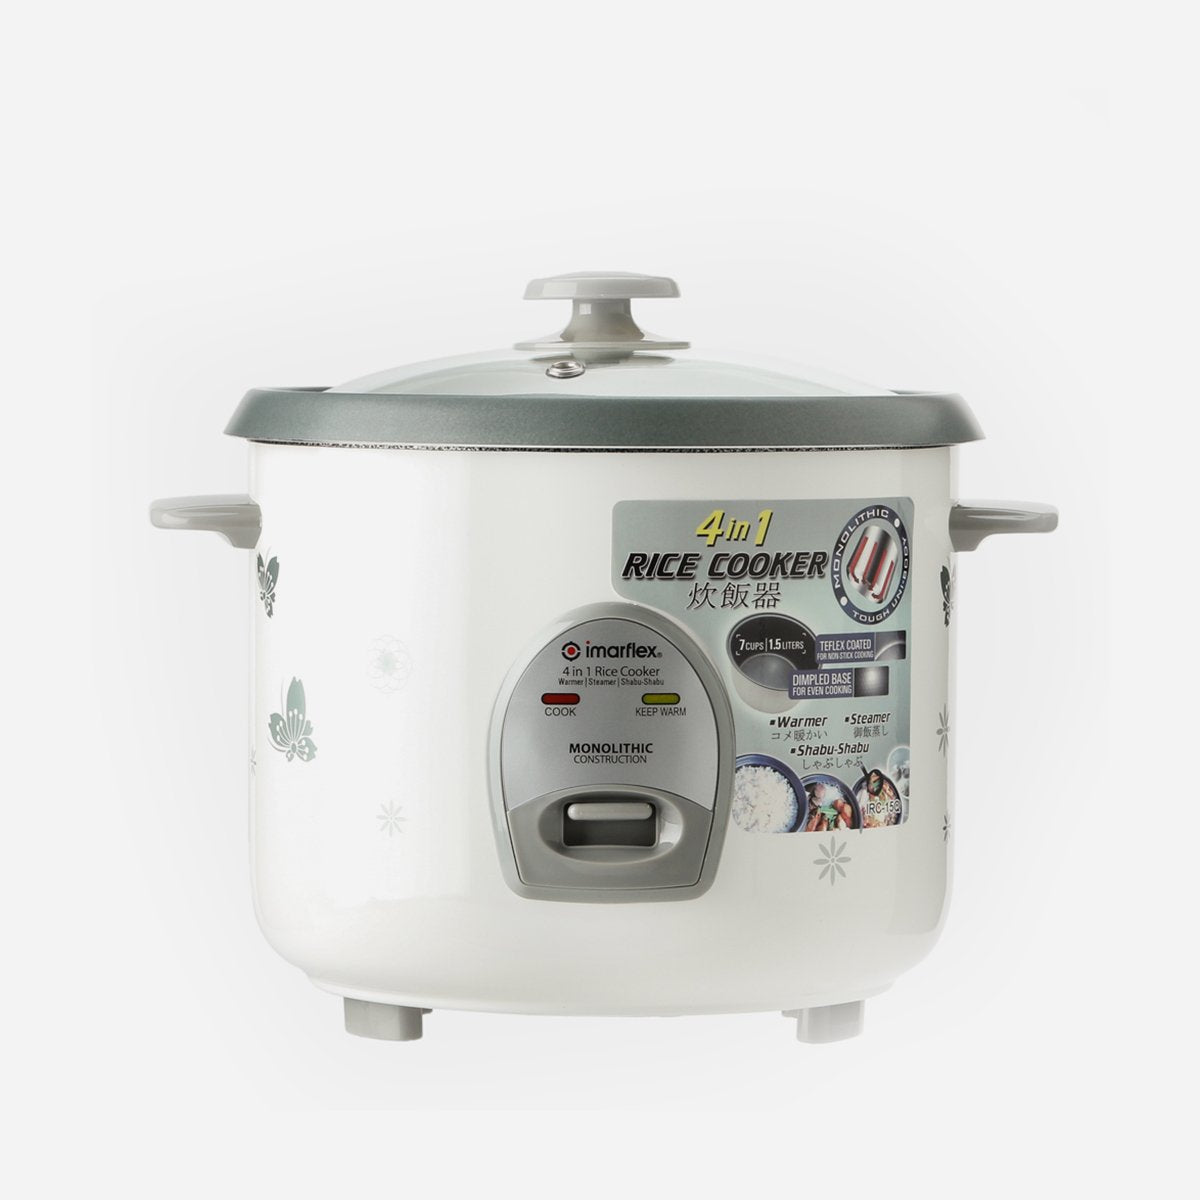 Imarflex 4-in-1 Rice Cooker